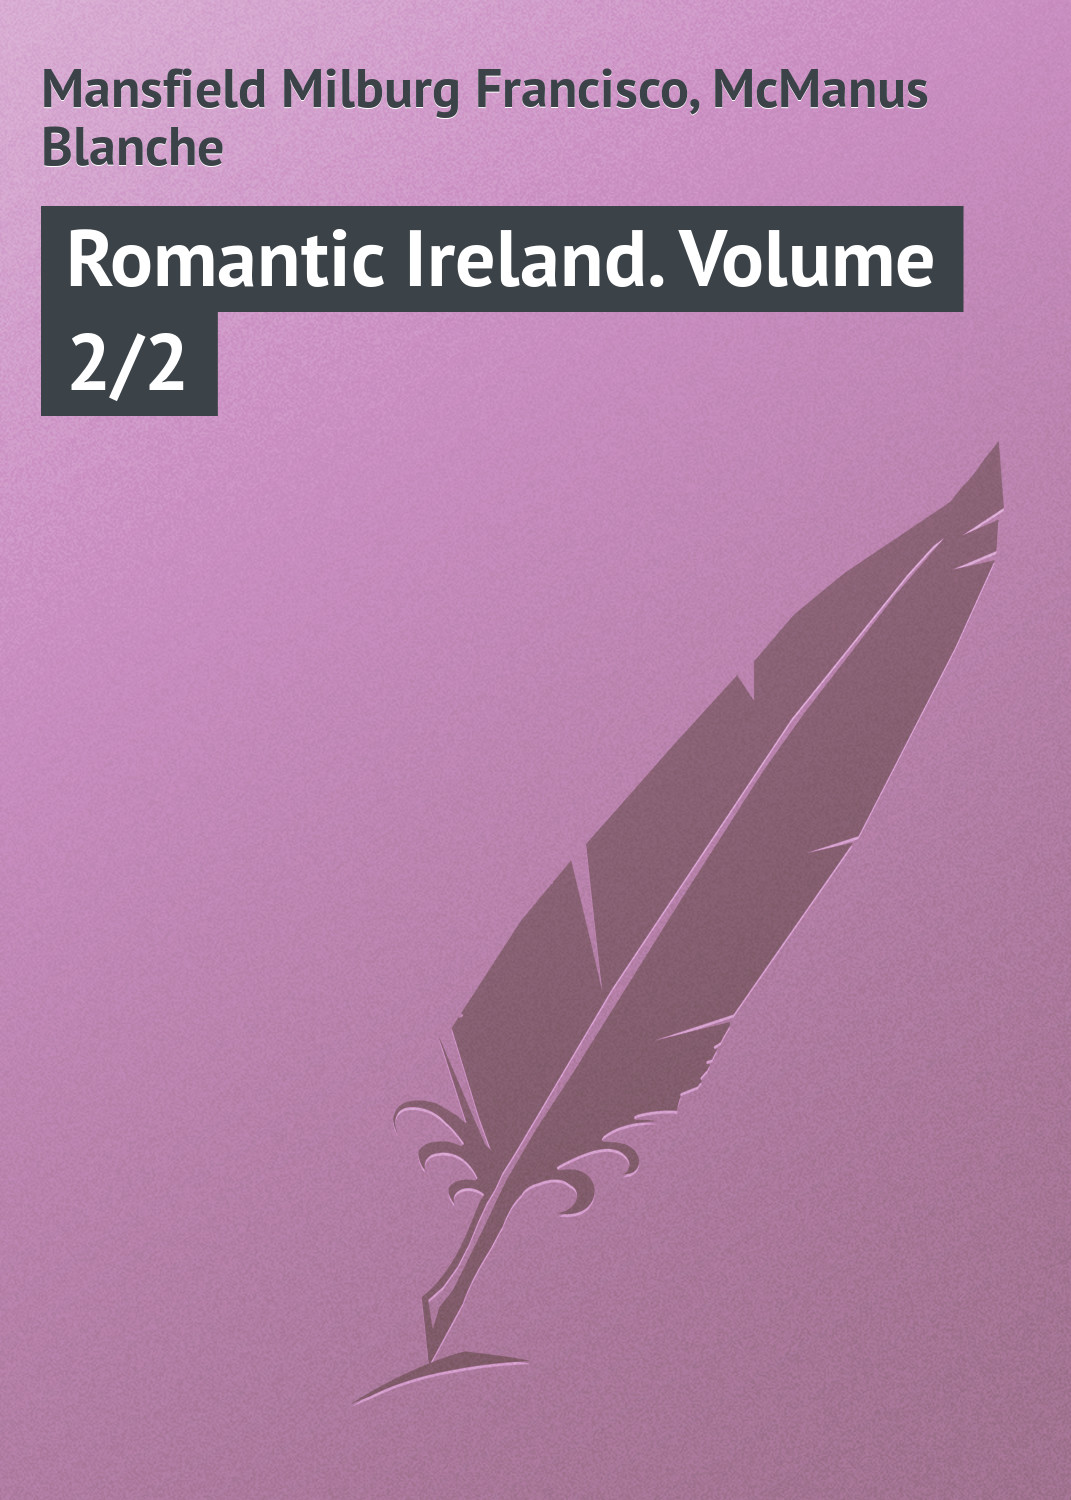 Книга Romantic Ireland. Volume 2/2 из серии , созданная Milburg Mansfield, Blanche Blanche, может относится к жанру Иностранные языки, Зарубежная классика, Книги о Путешествиях. Стоимость электронной книги Romantic Ireland. Volume 2/2 с идентификатором 23162363 составляет 5.99 руб.